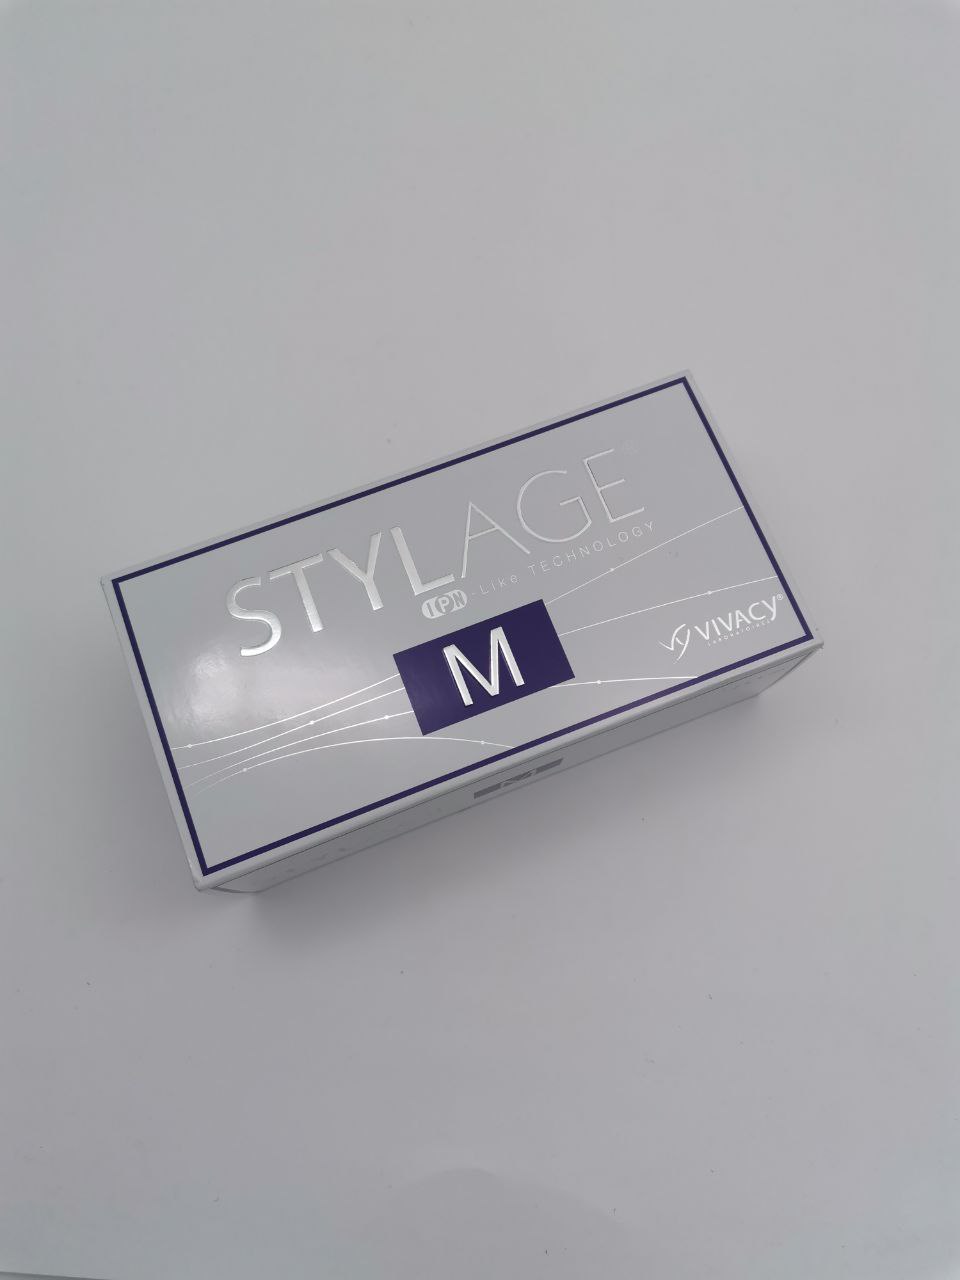 Стеллаж для губ отзывы. Stylage m филлер 1 ml. Филлер Stylage l. Stylage m (2*1.0 ml). Stylage m (1 мл).